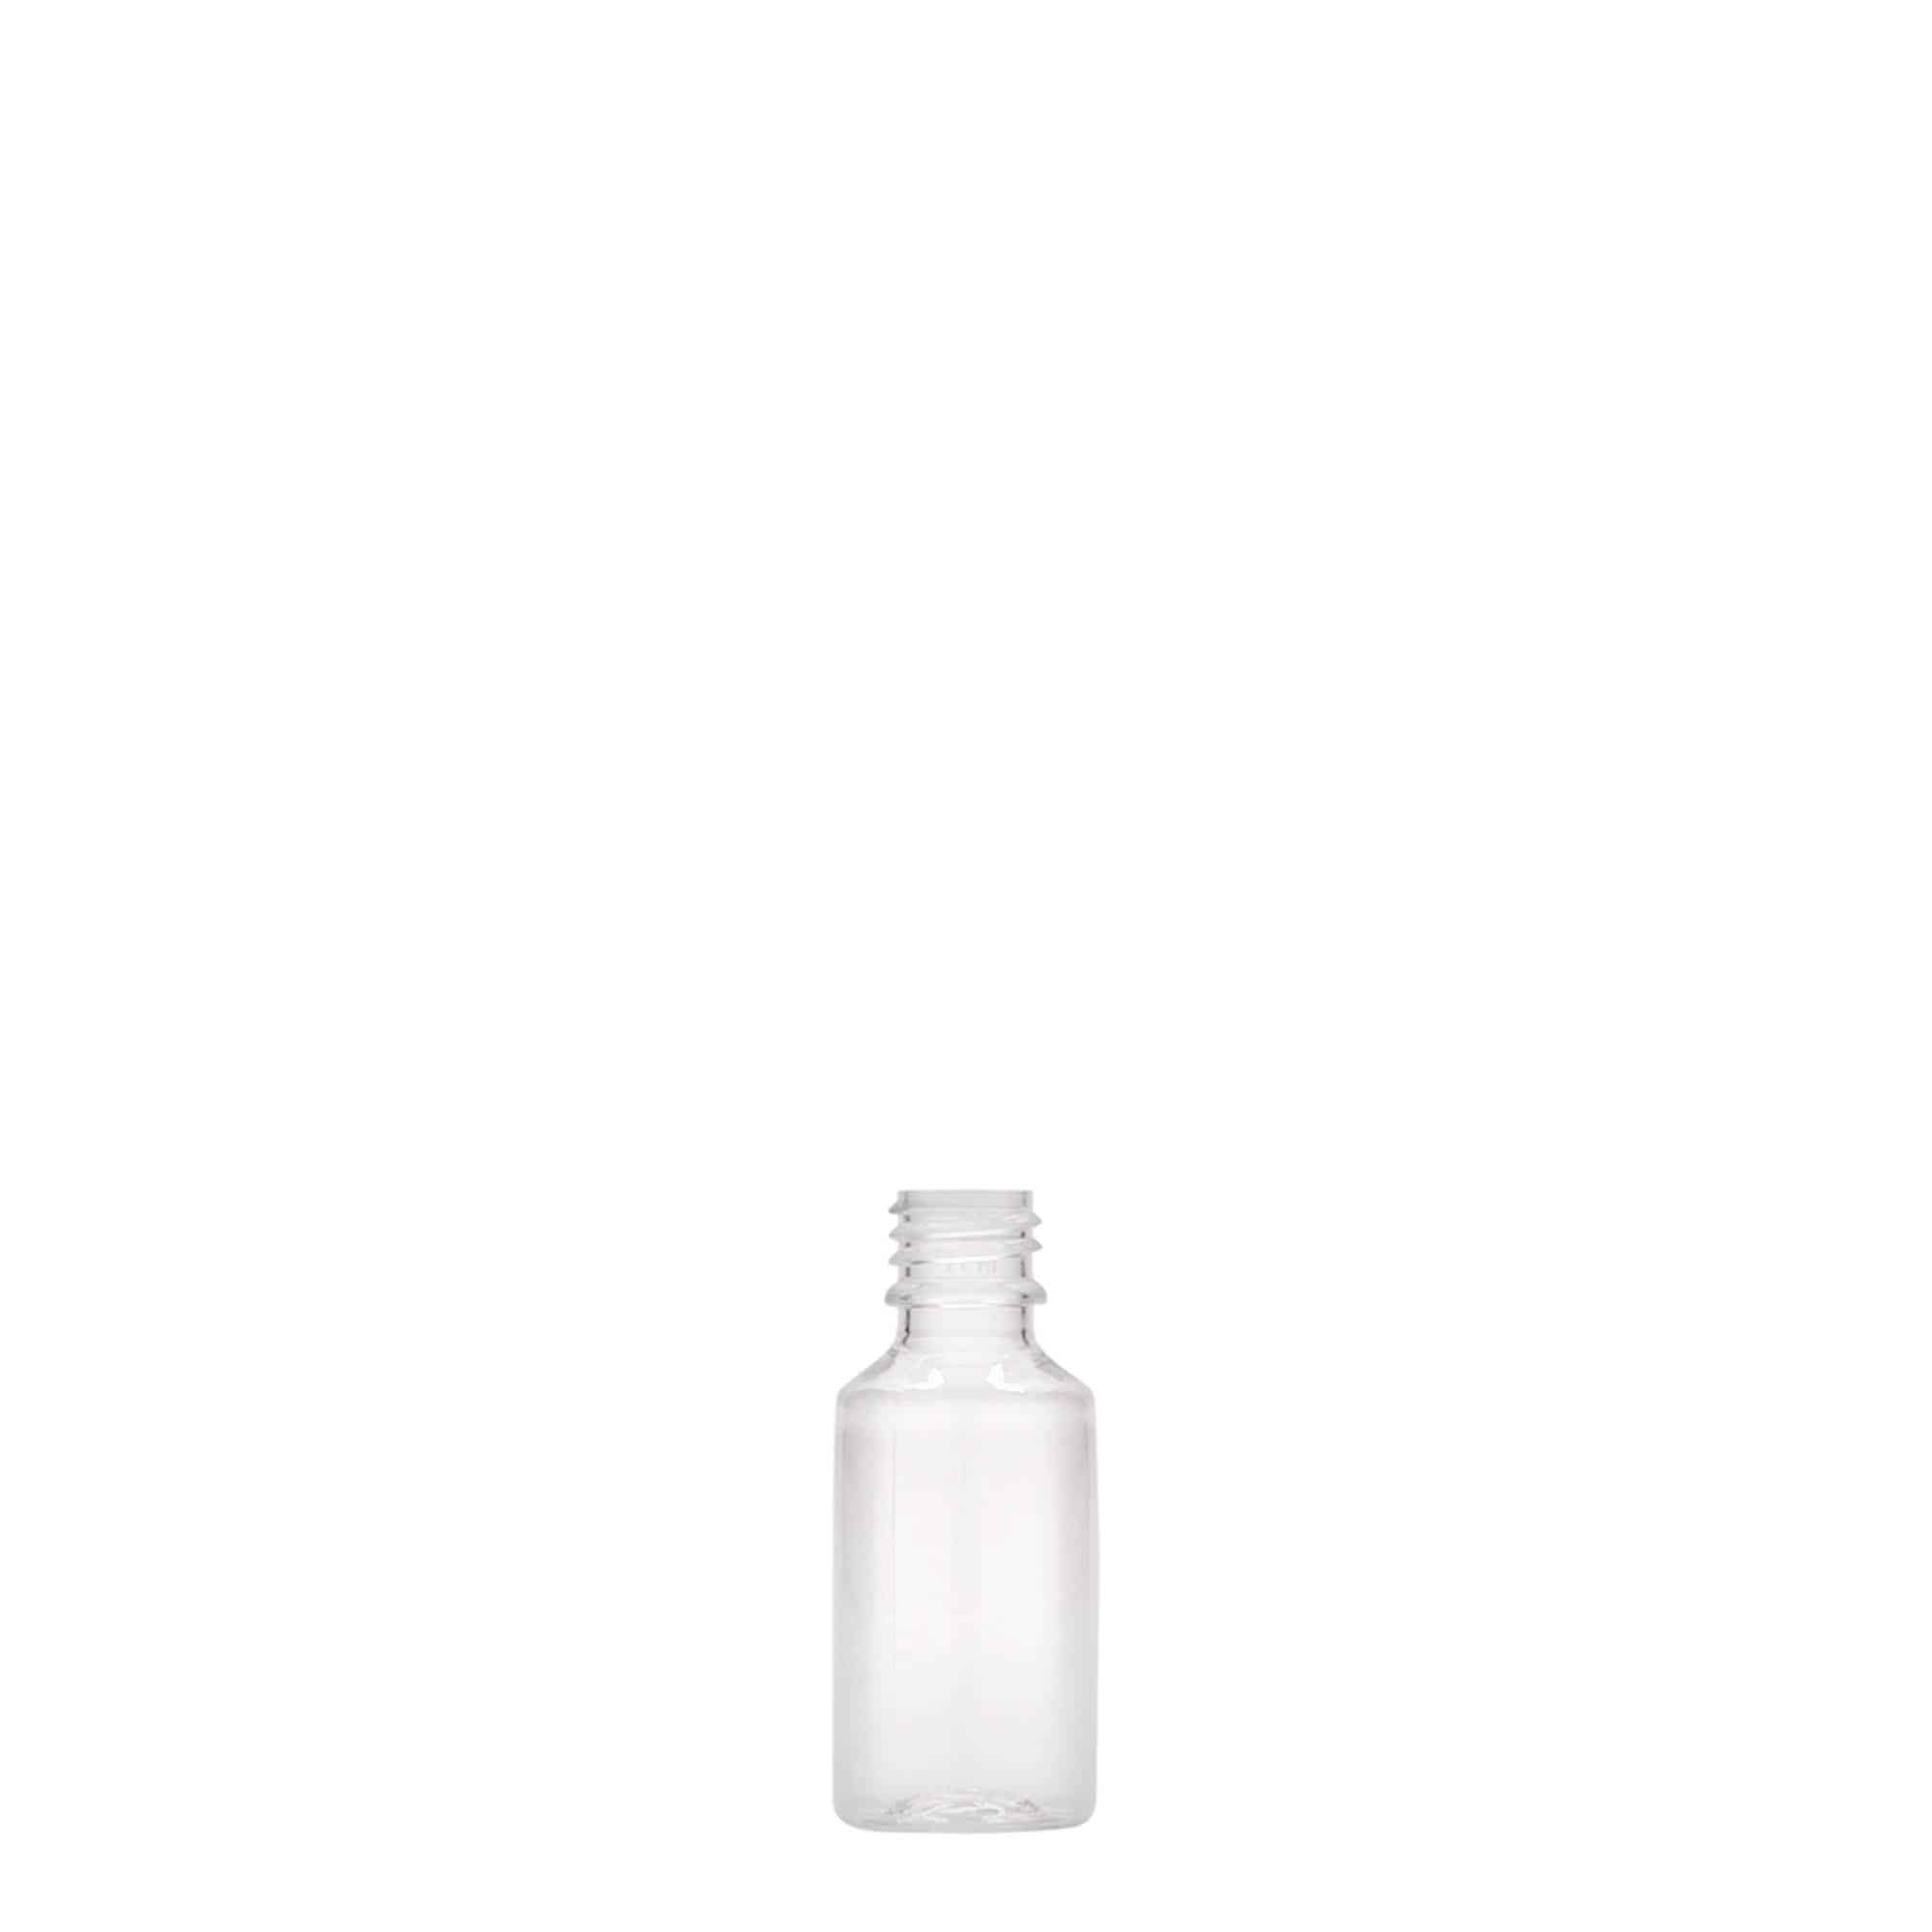 PET lahev 10 ml 'E-Liquid' s odtrhávacím kroužkem a dětskou pojistkou, plast, uzávěr: šroubovací uzávěr